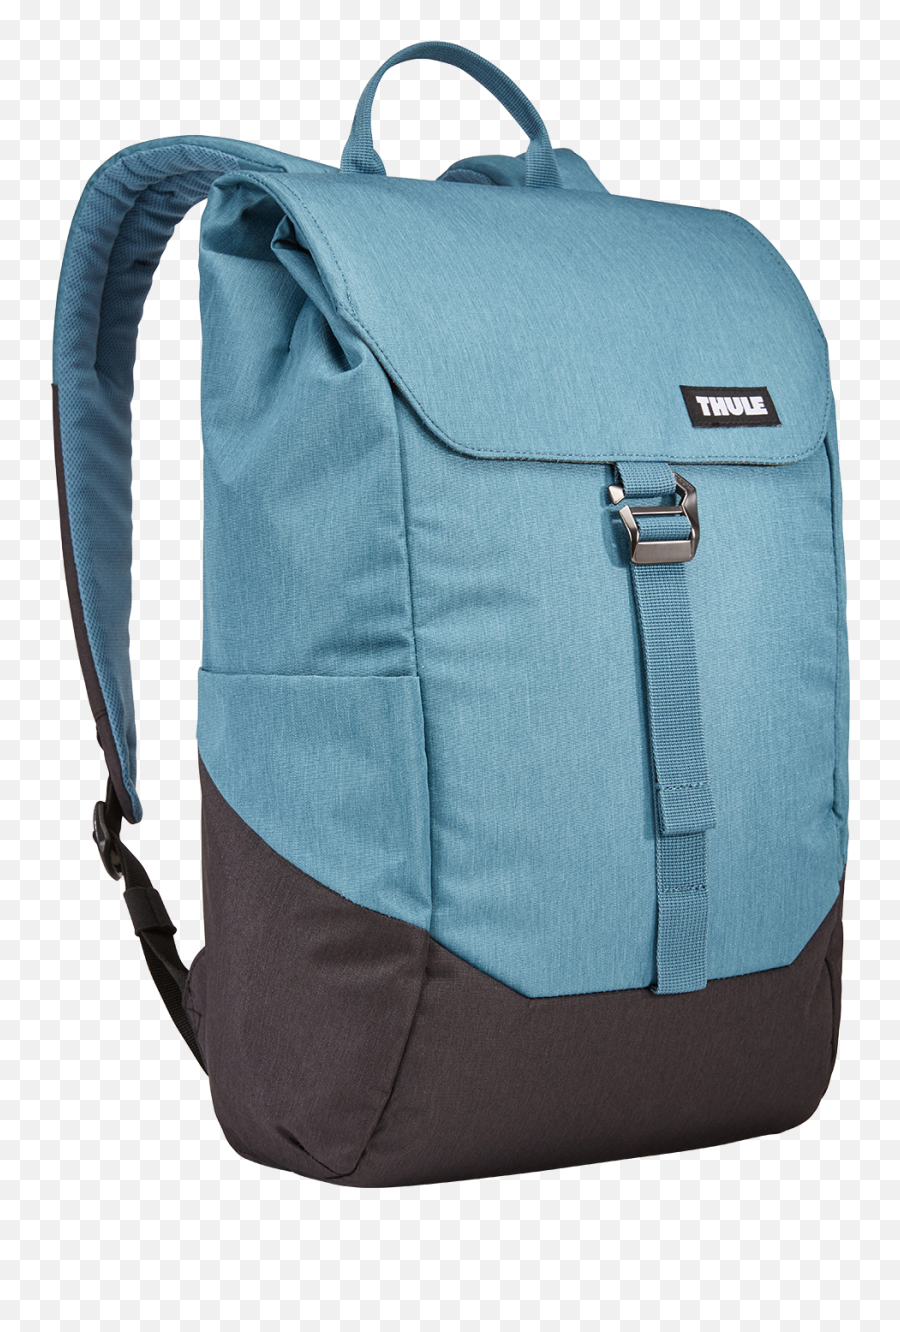 Thule Lithos Backpack 16 L - Thule Lithos Backpack Emoji,Emoji Flap Backpack